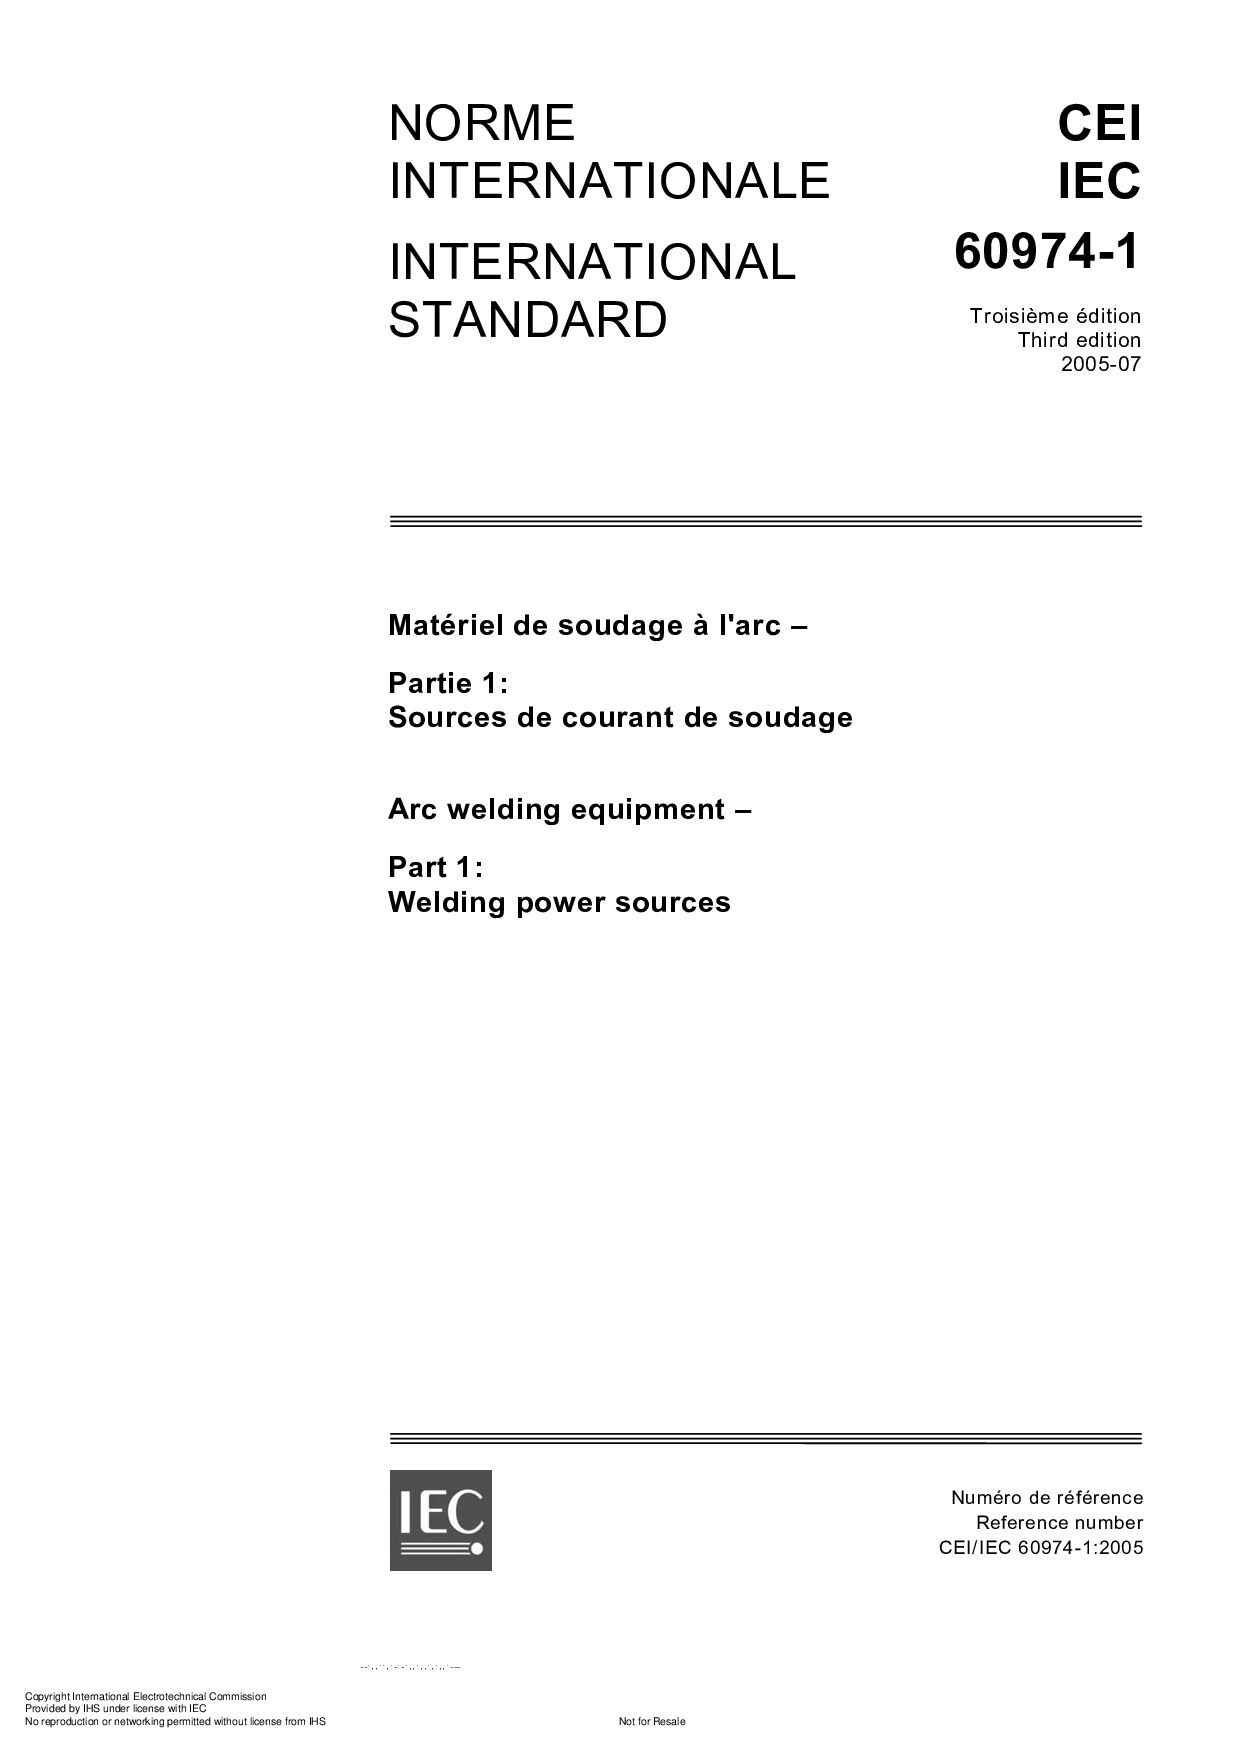 IEC 60974-1:2005